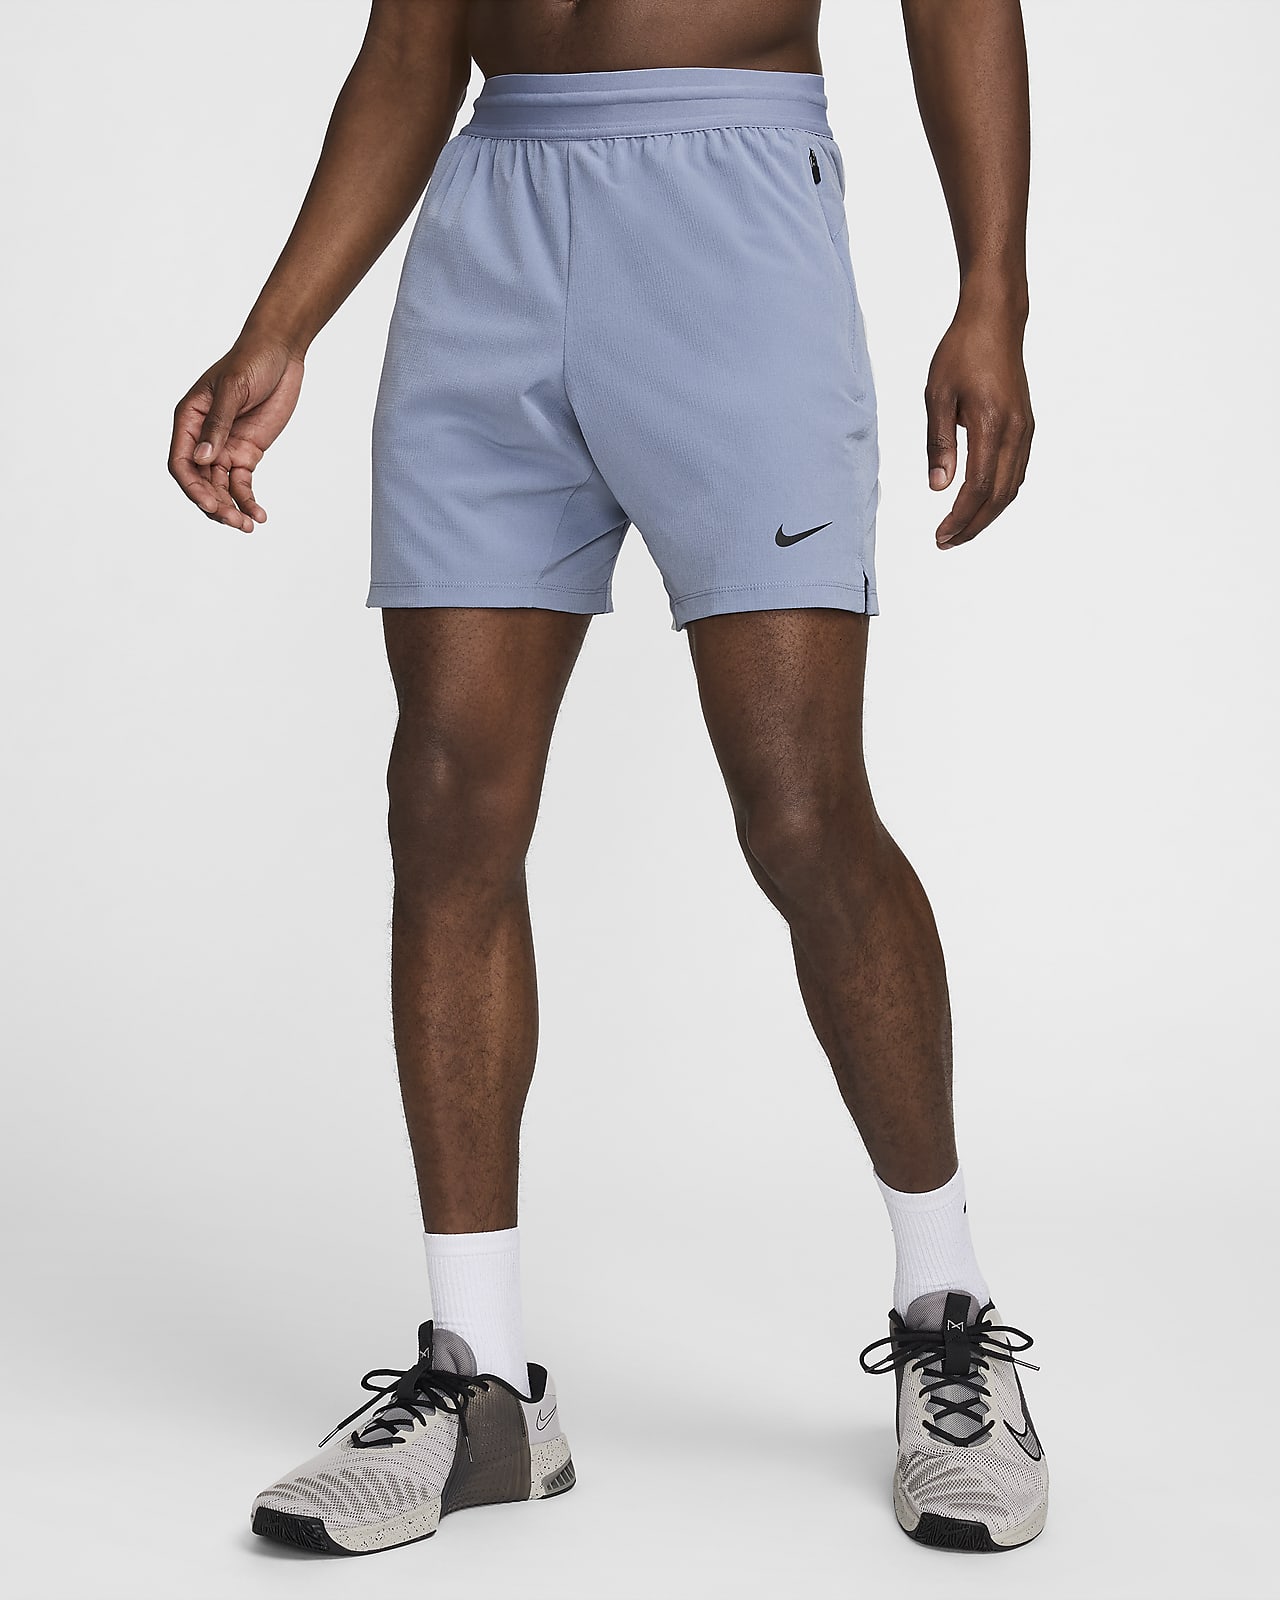 Nike Flex Rep 4.0 Dri-FIT 18 cm-es, bélés nélküli férfi fitneszrövidnadrág